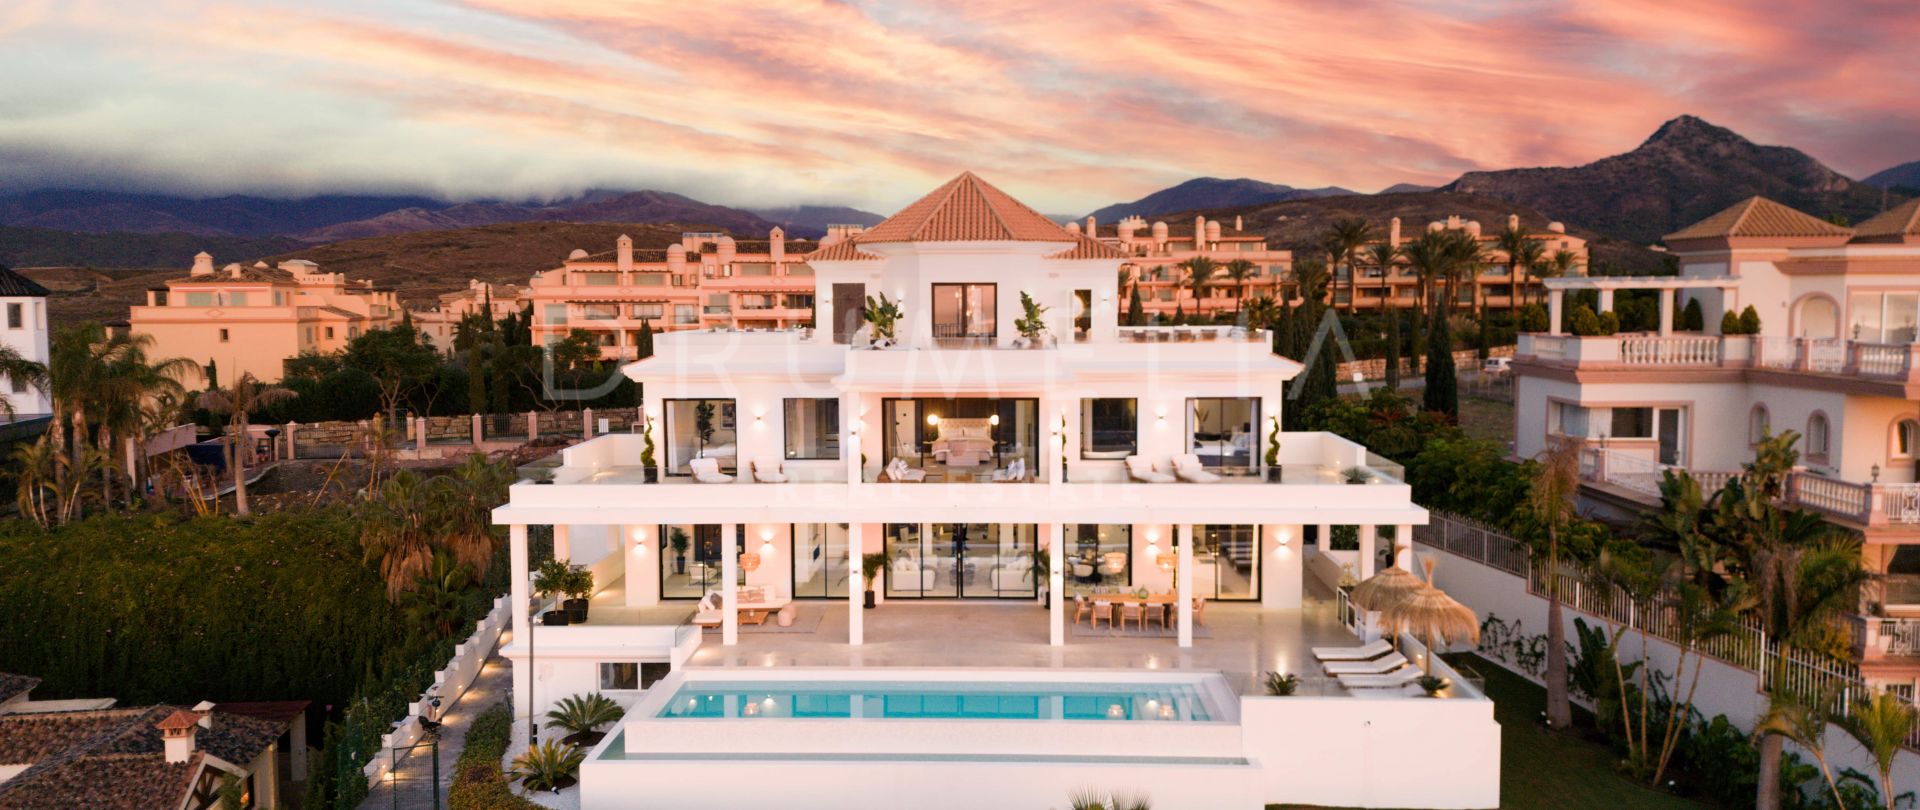 Elegante volledig gerenoveerde luxe villa met prachtig uitzicht op zee in Los Flamingos, Benahavis.